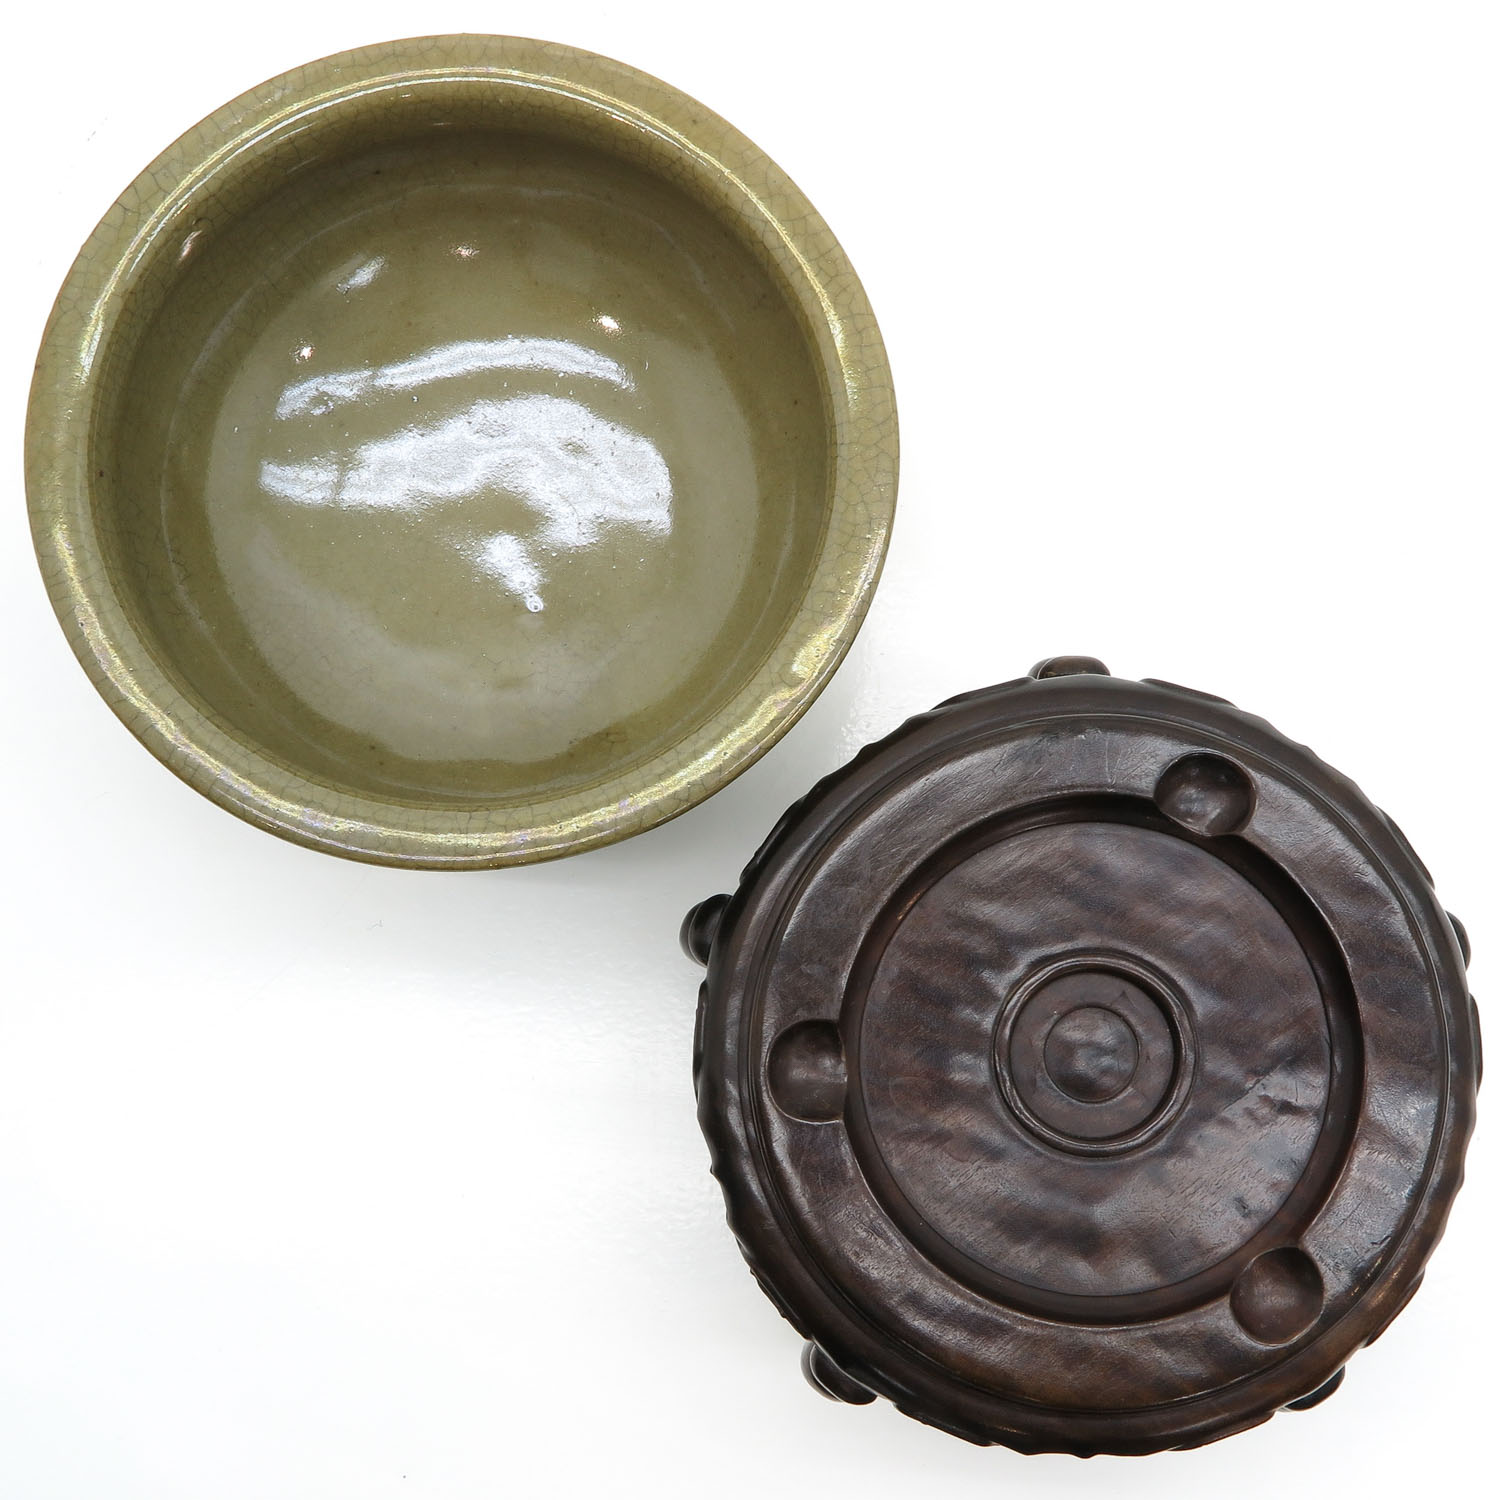 China Porcelain Crackle Ware Censer - Image 5 of 6